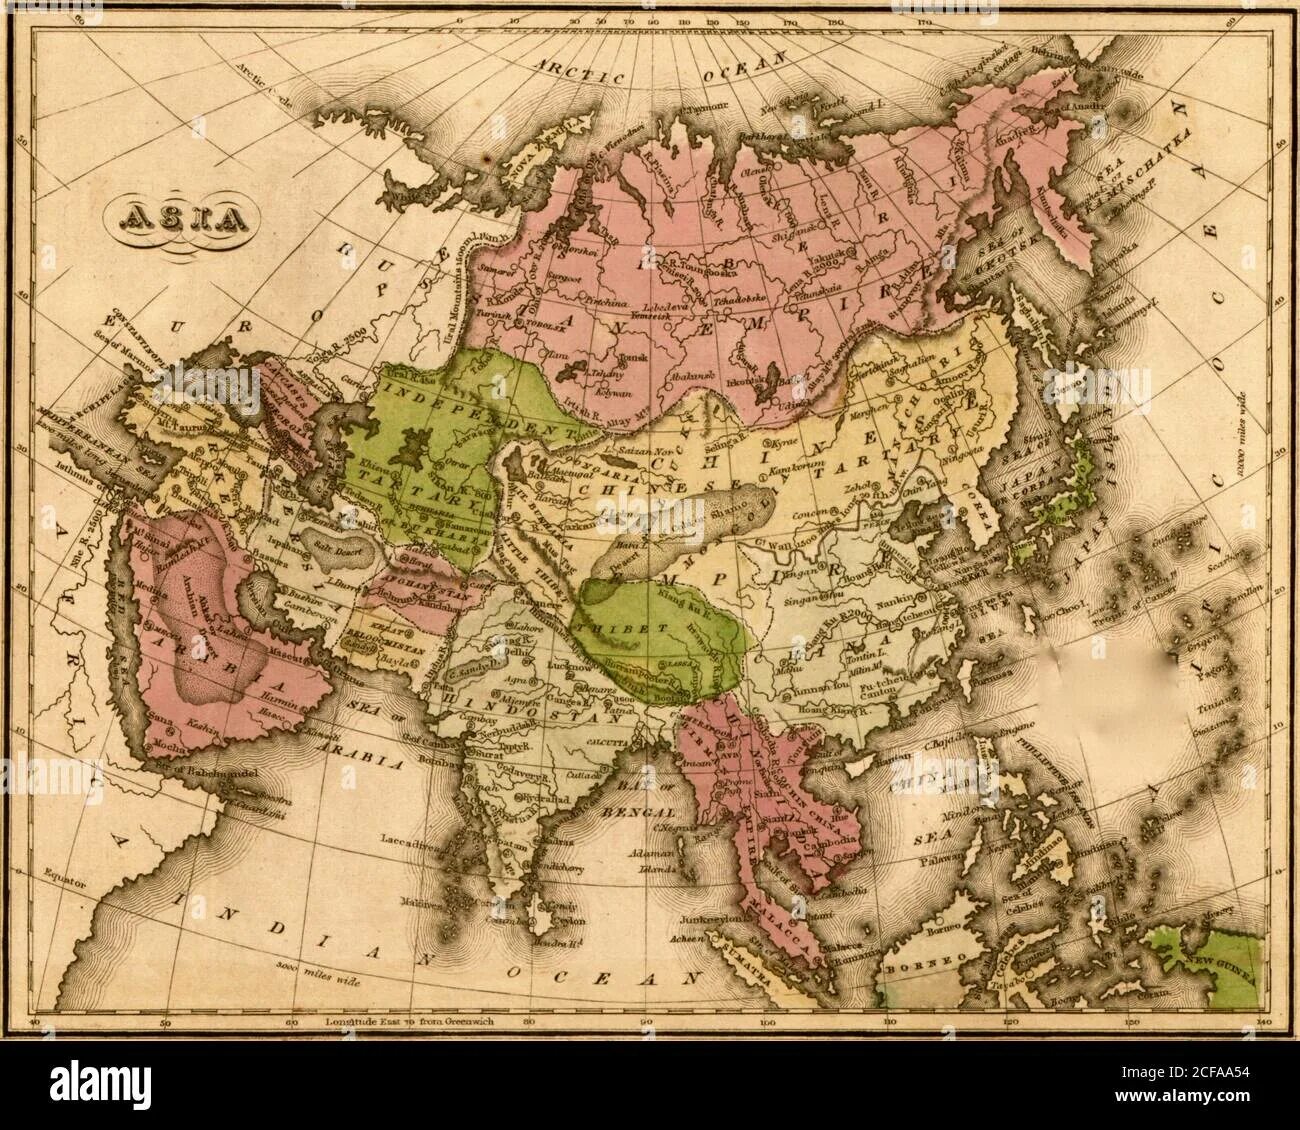 Страны азии 19 20 века. Карта Азии 19 век. Политическая карта Азии 19 века. Карта Азии в начале 19 века. Карта стран Азии 19 века.